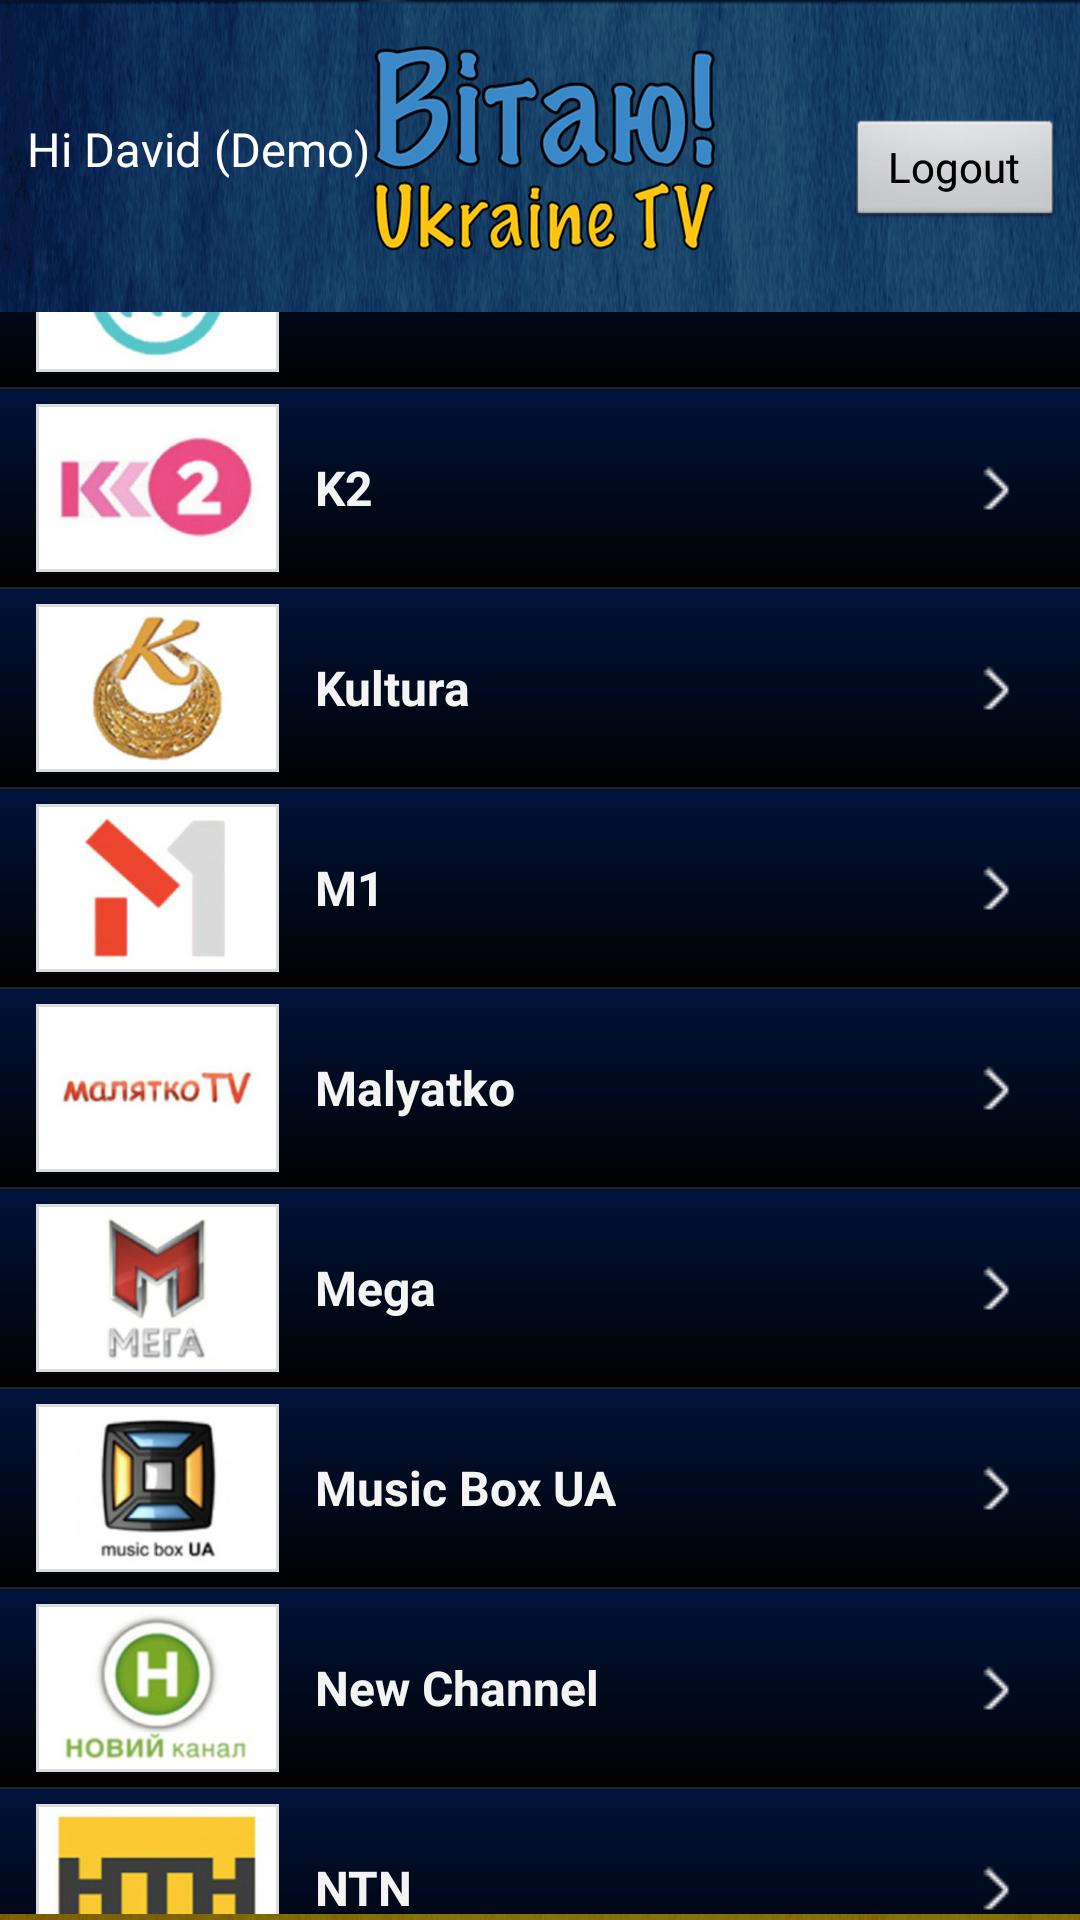 Vitaju TV - Ukraine IPTV (2) APK pour Android Télécharger